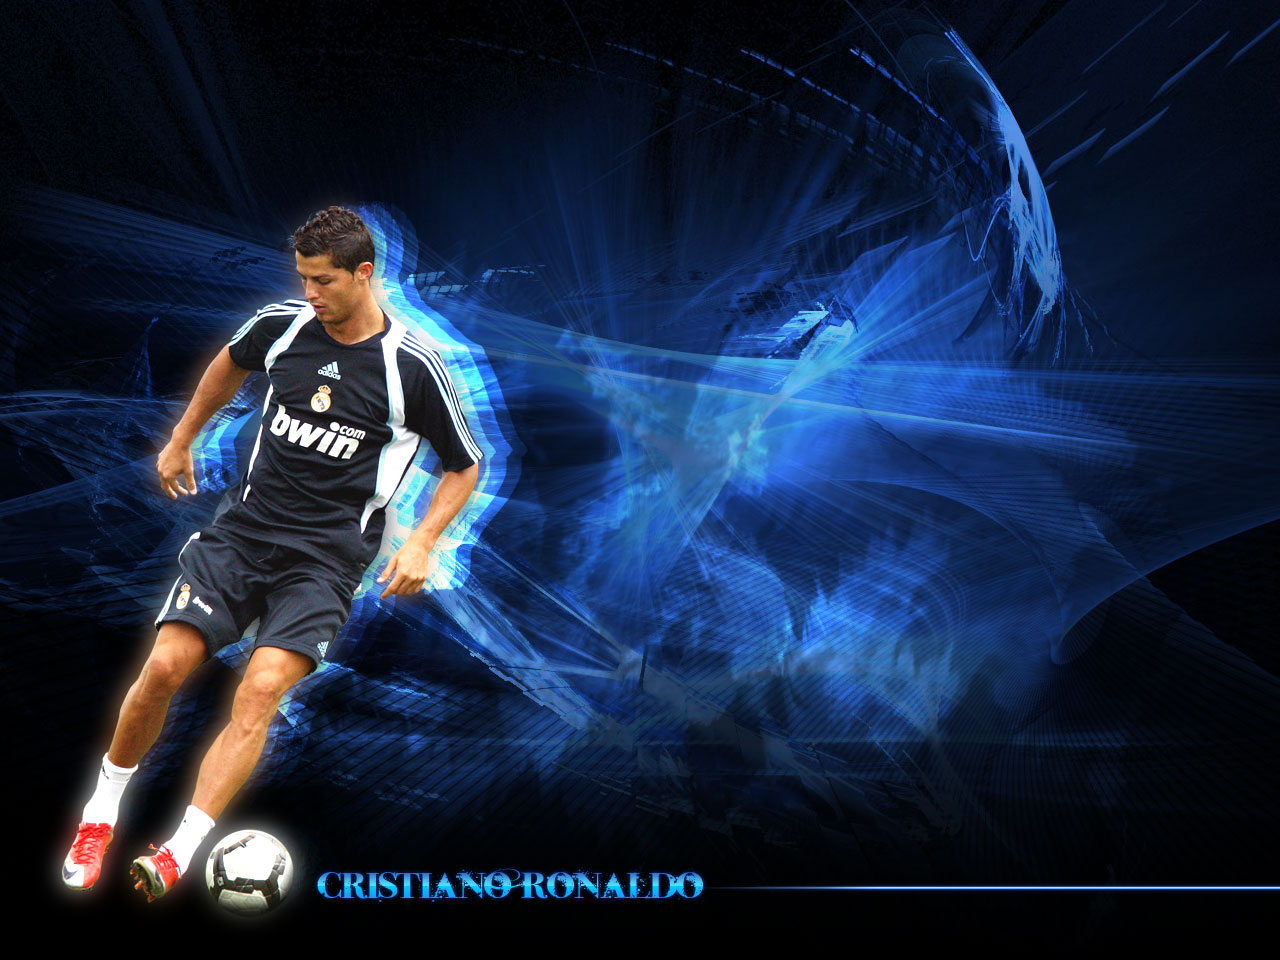 ronaldo wallpaper download,football player,player,football,soccer player,team sport